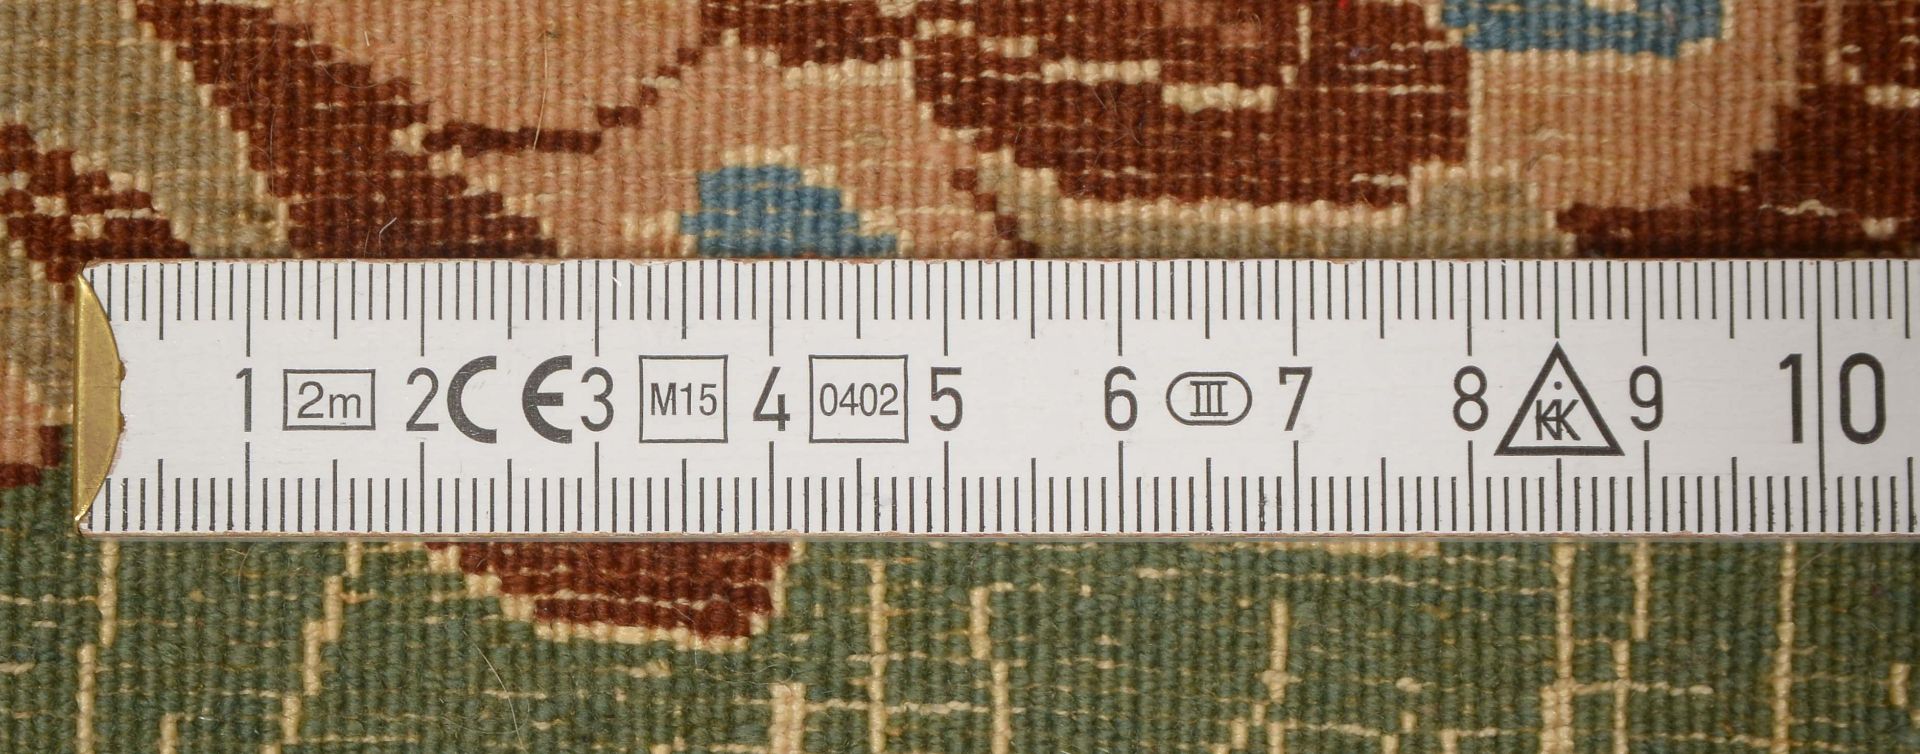 Nain-Bilderteppich, mit Seidenanteilen, sehr feine Knuepfung, ca. 850.000 Knoten/qm, Motiv -Junges P - Bild 2 aus 2